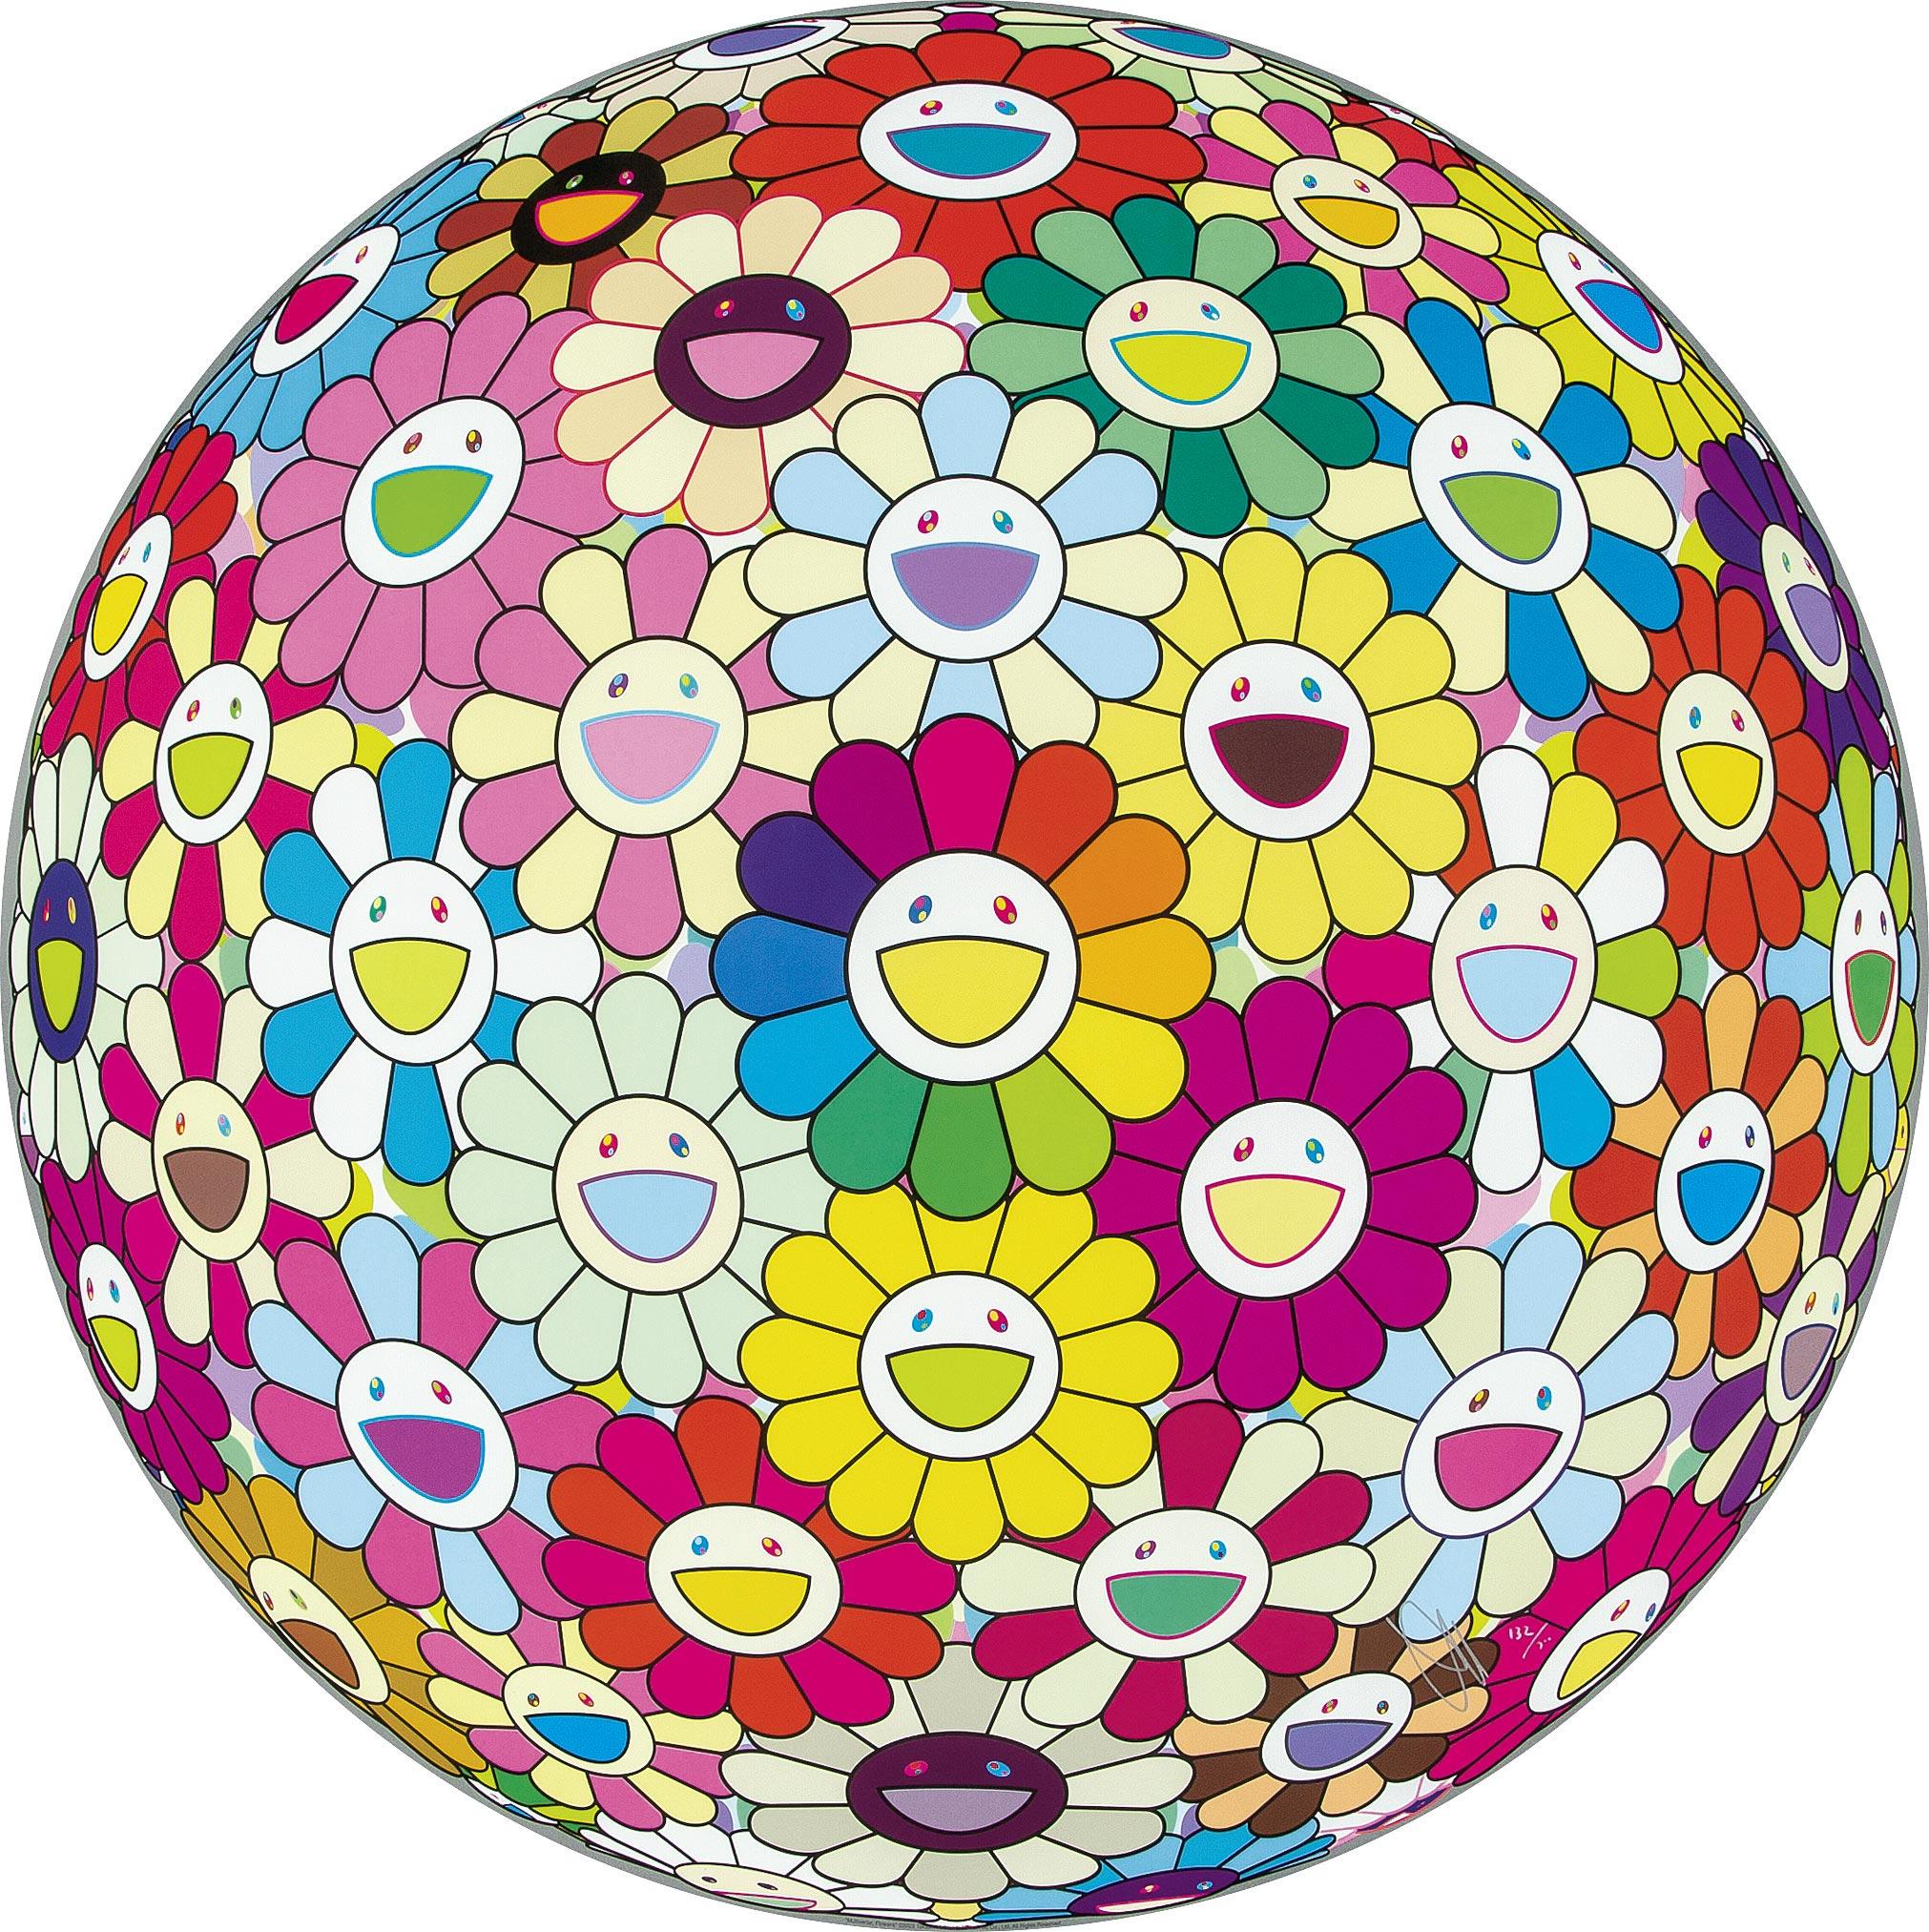 Takashi Murakami Figurative Print – Multiversum, Blumen. Limitierte Auflage (Druck) von Murakami, signiert und nummeriert.